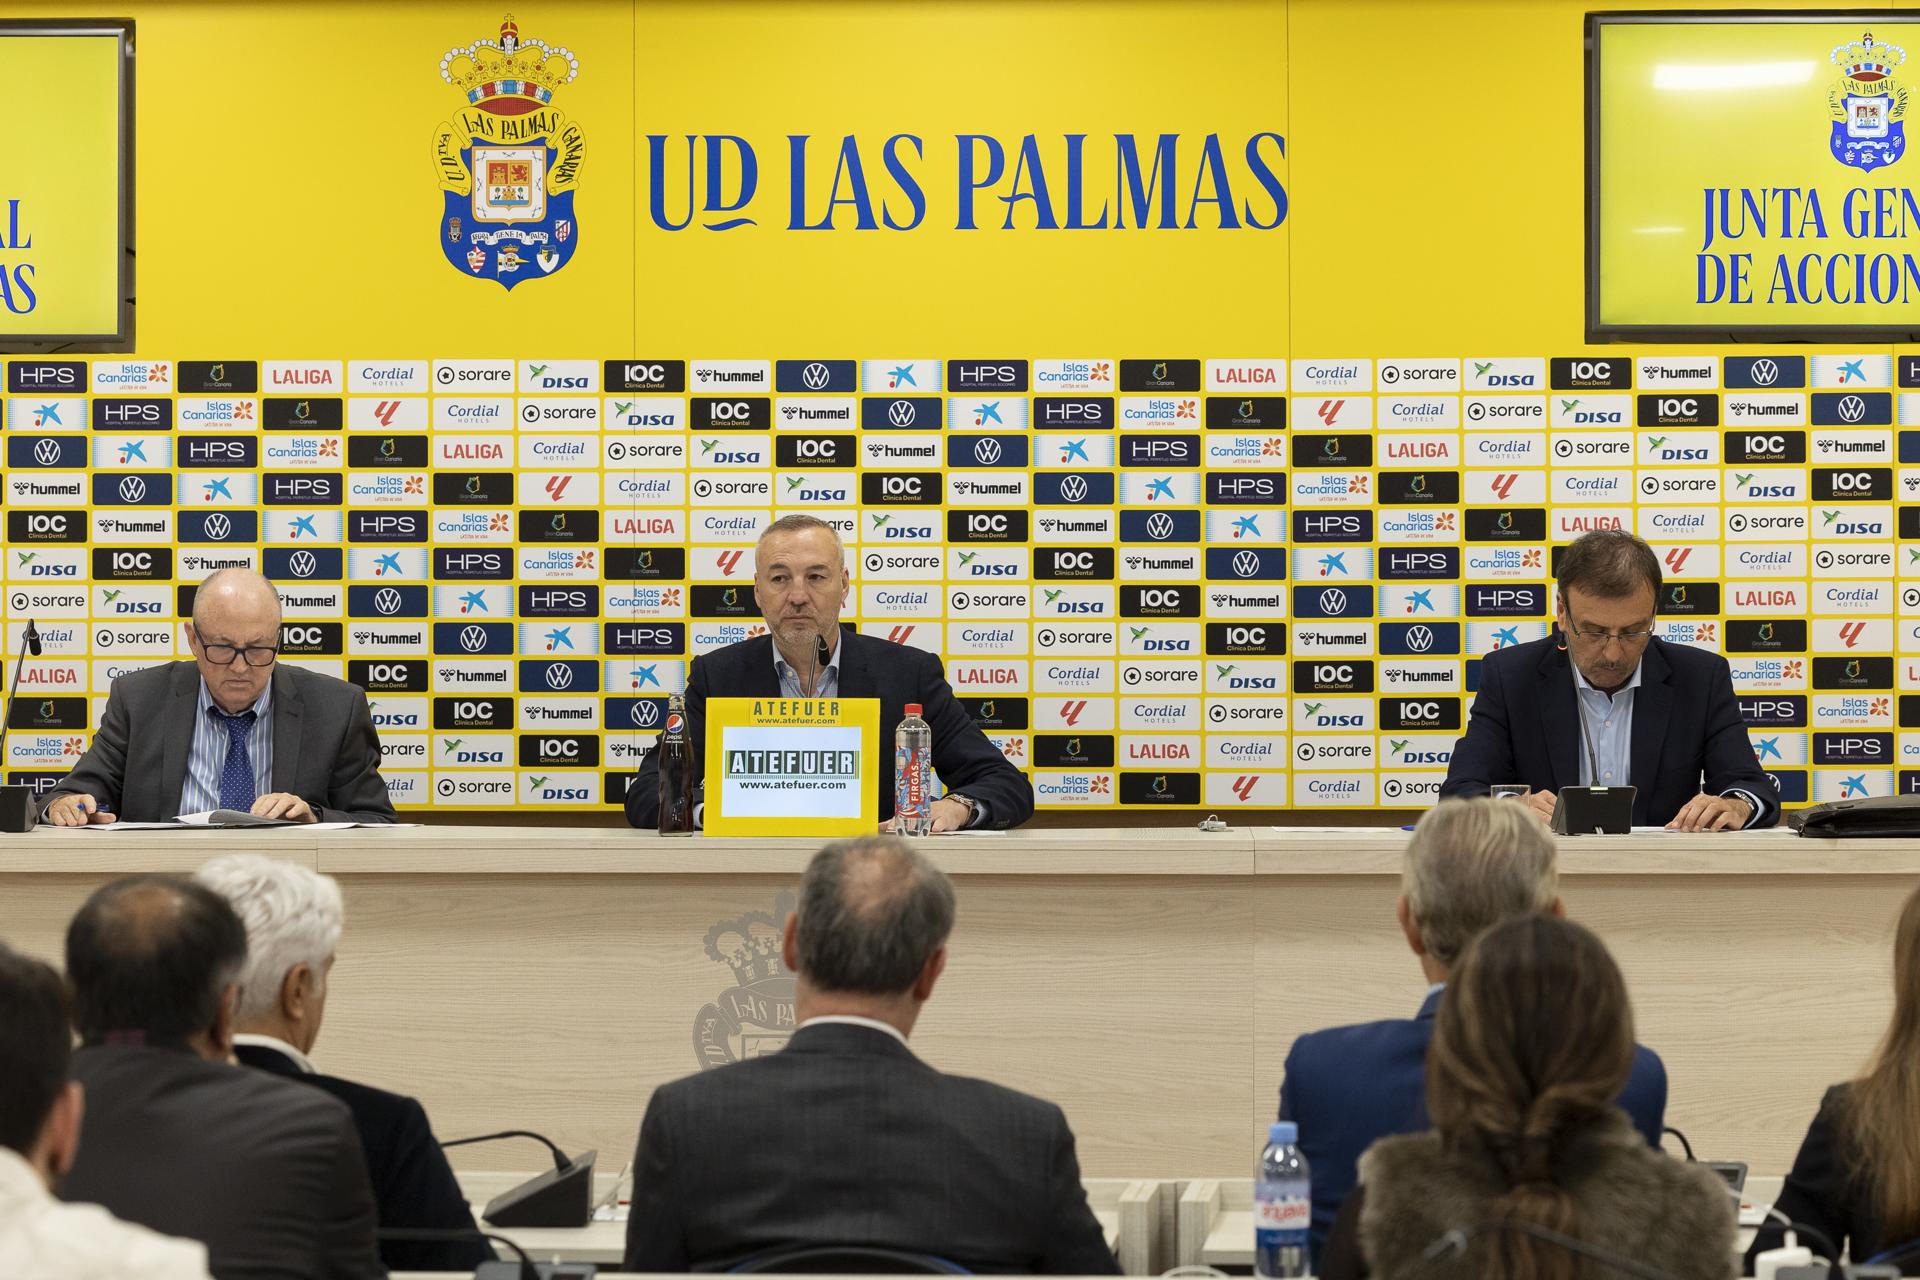 La UD Las Palmas celebró este viernes su junta general de accionistas. En la imagen, el presidente, Miguel Angel Ramírez (c). EFE/ Quique Curbelo